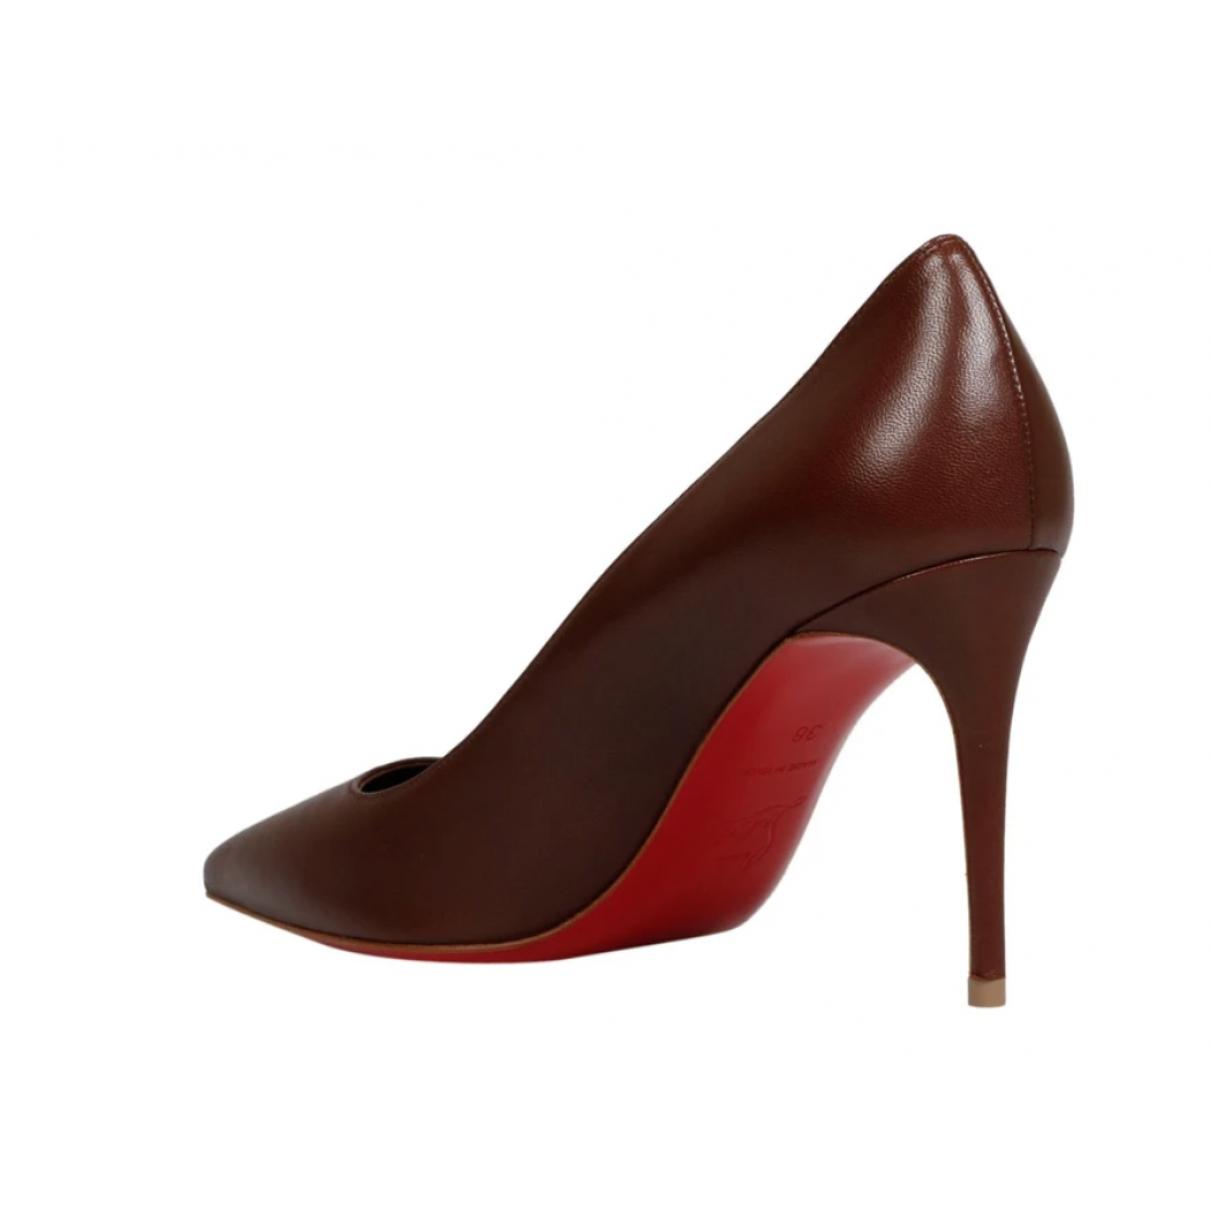 Leather heels - 7